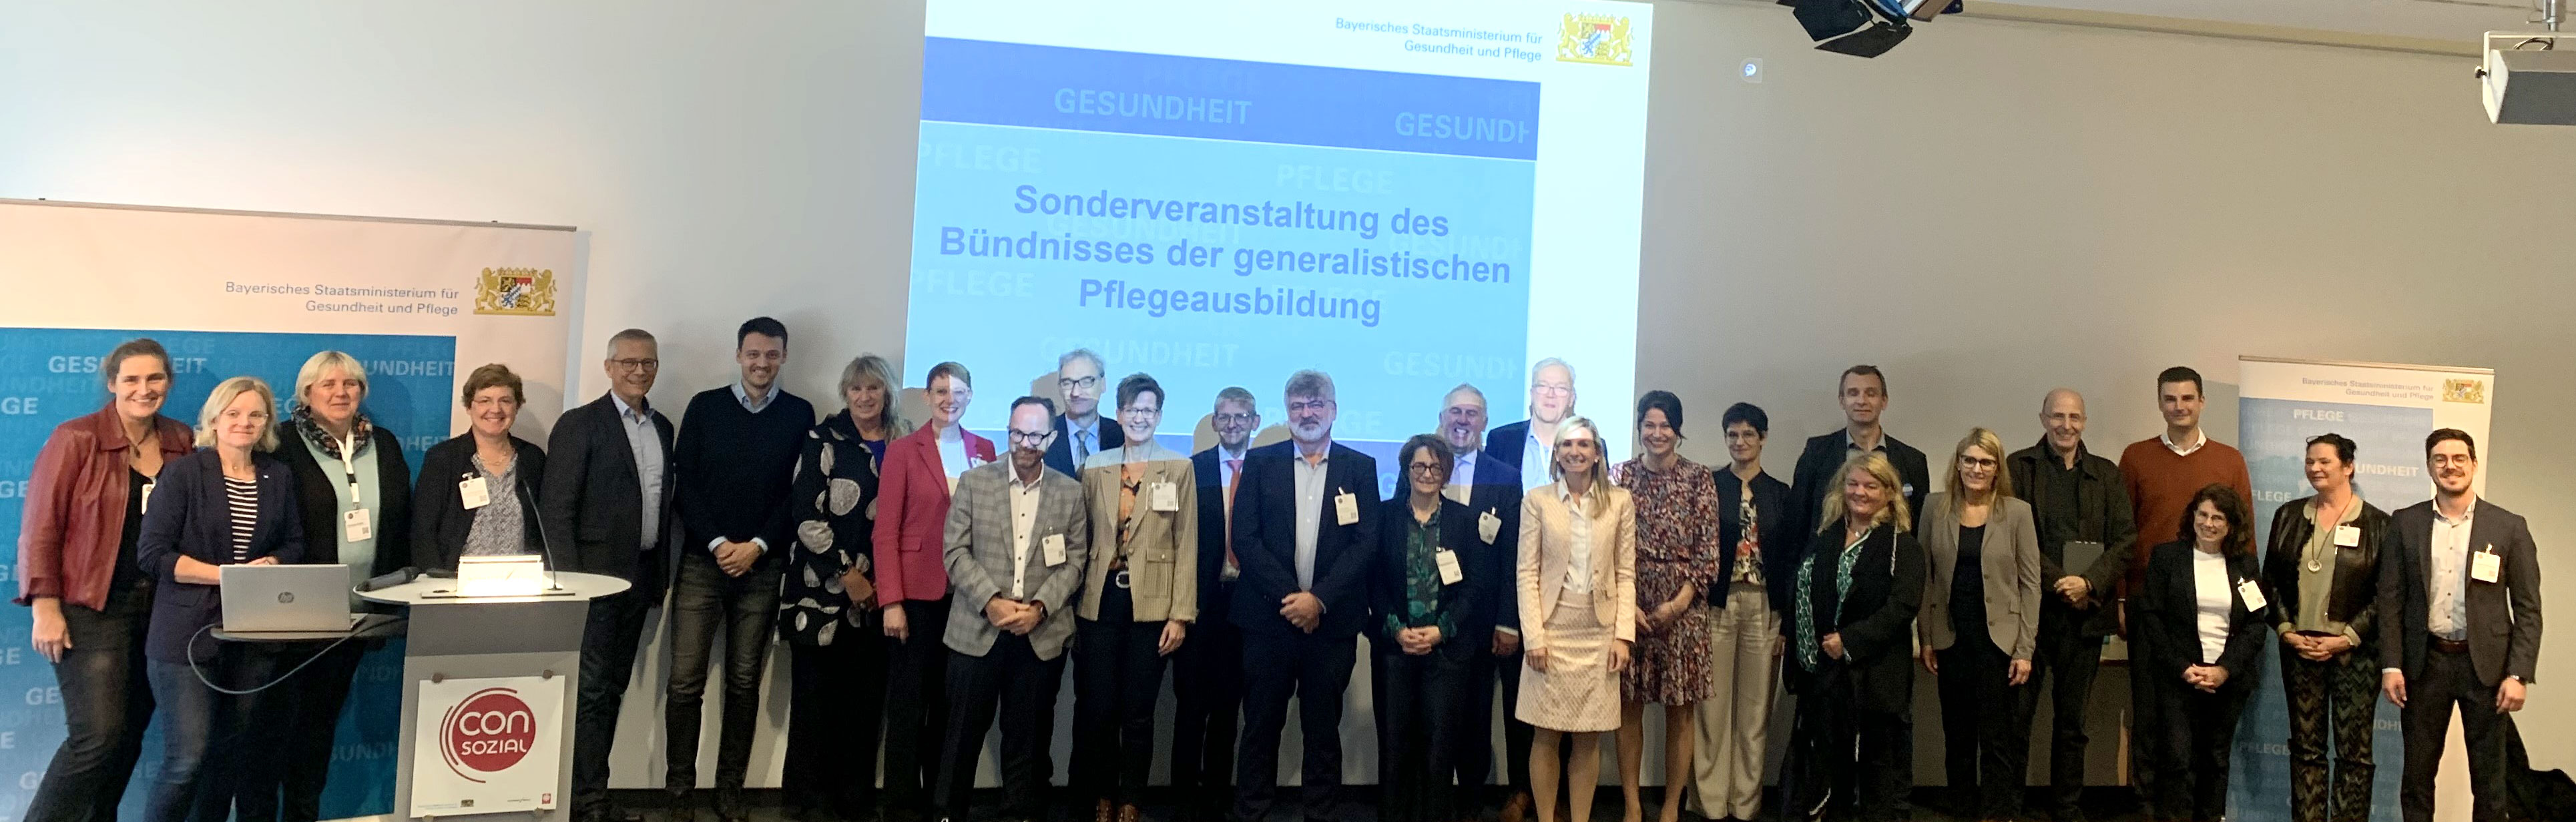 Treffen im Zuge der Sonderveranstaltung des „Bündnisses für generalistische Pflegeausbildung“ am 25. Oktober 2023 auf der Messe „ConSozial“ in Nürnberg